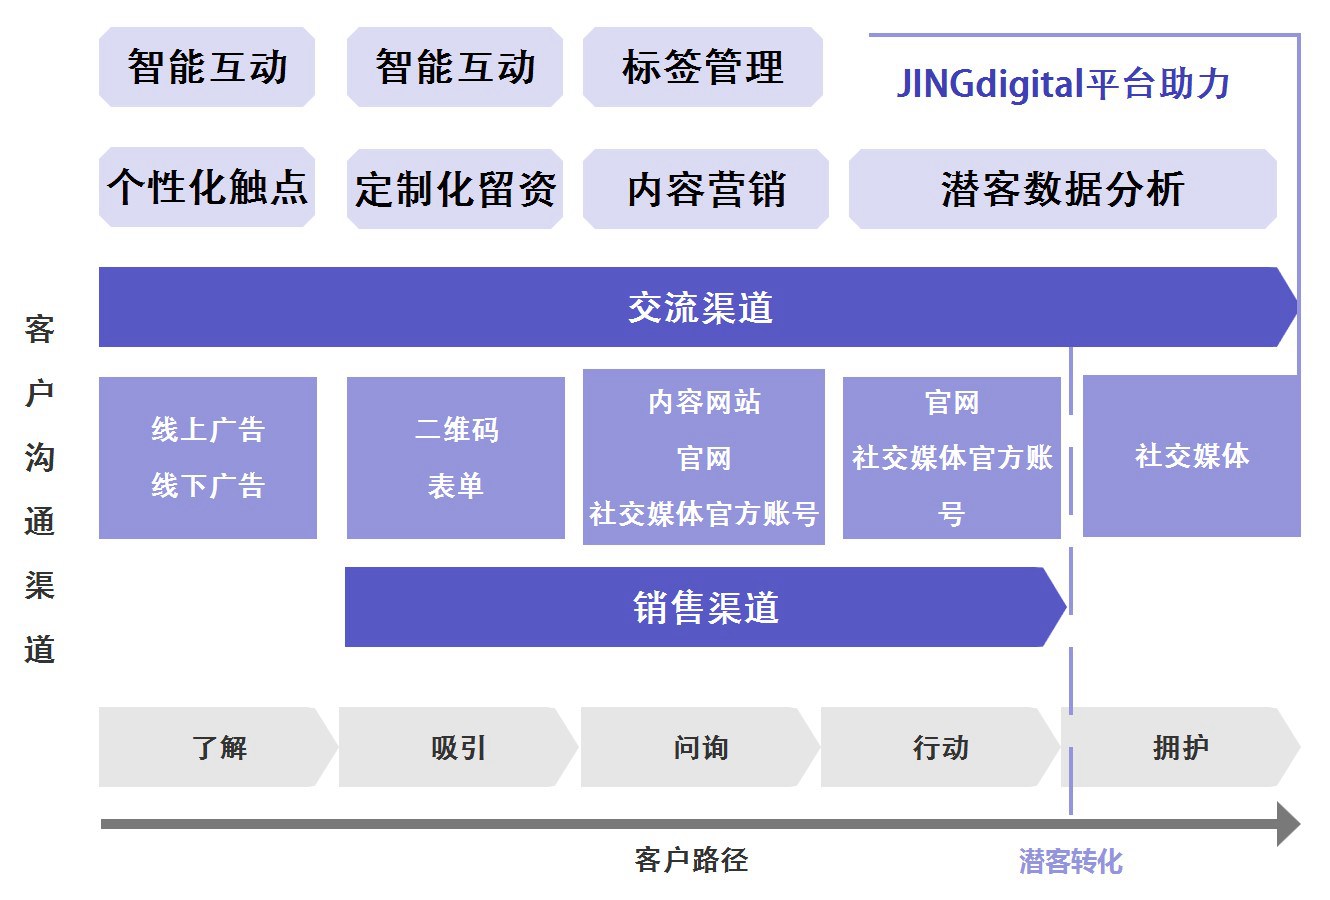 JINGdigital平台助力潜客挖掘——基于客户路径